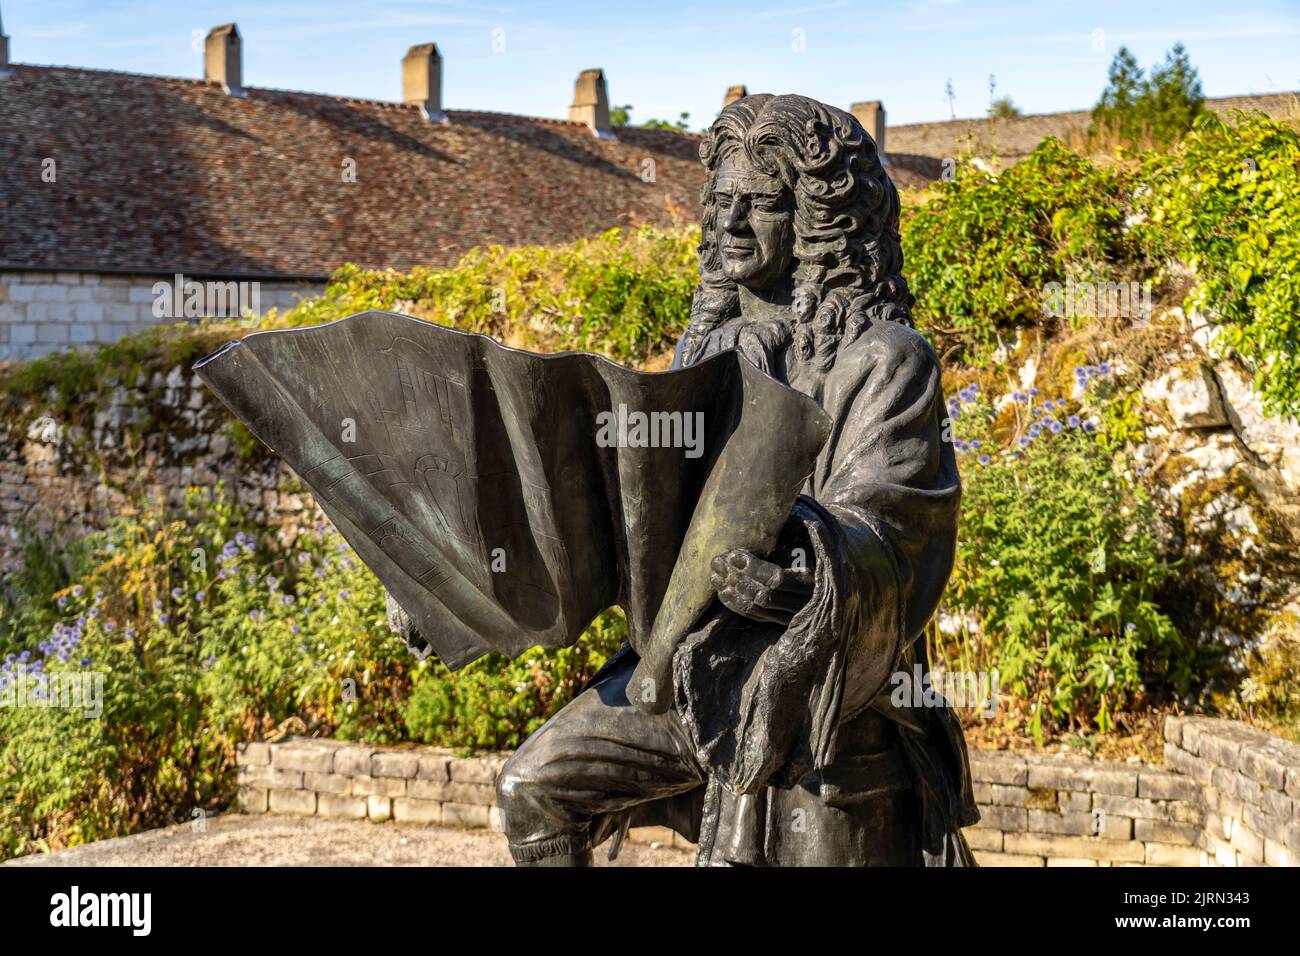 Statua di Vauban im Unesco Welterbe Zitadelle von Besancon, Bourgogne-Franche-Comté, Frankreich, Europa | Statua di Vauban al Patrimonio Mondiale C Foto Stock